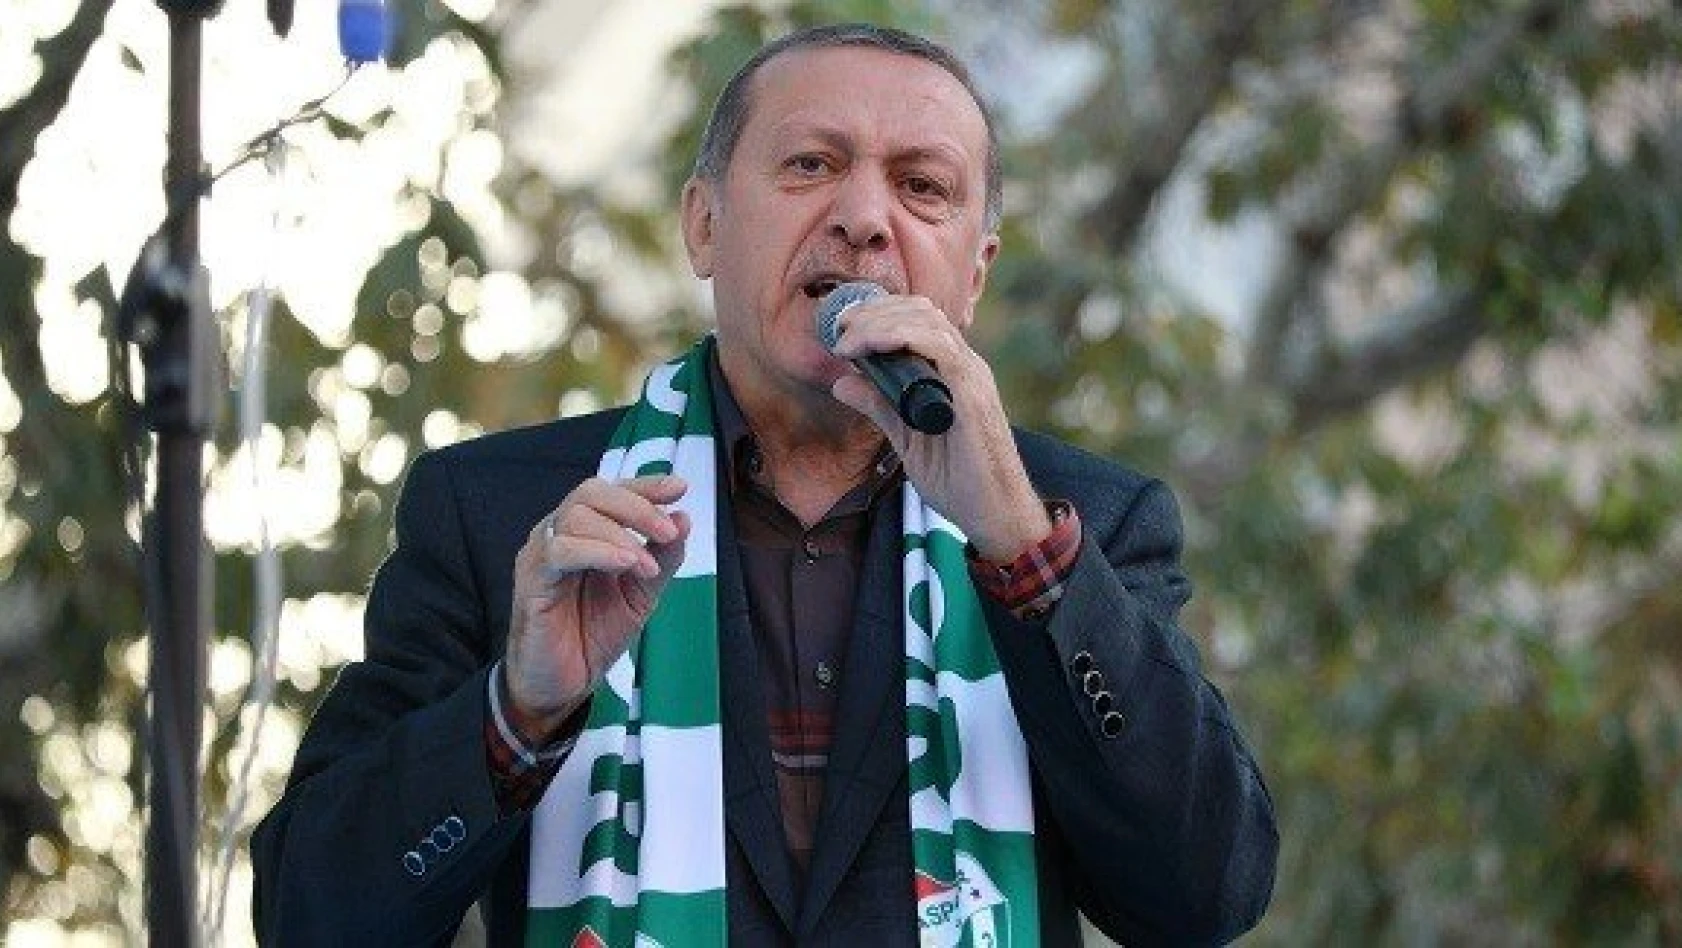 Erdoğan: 'Sizi de cezaevine tıkarız'